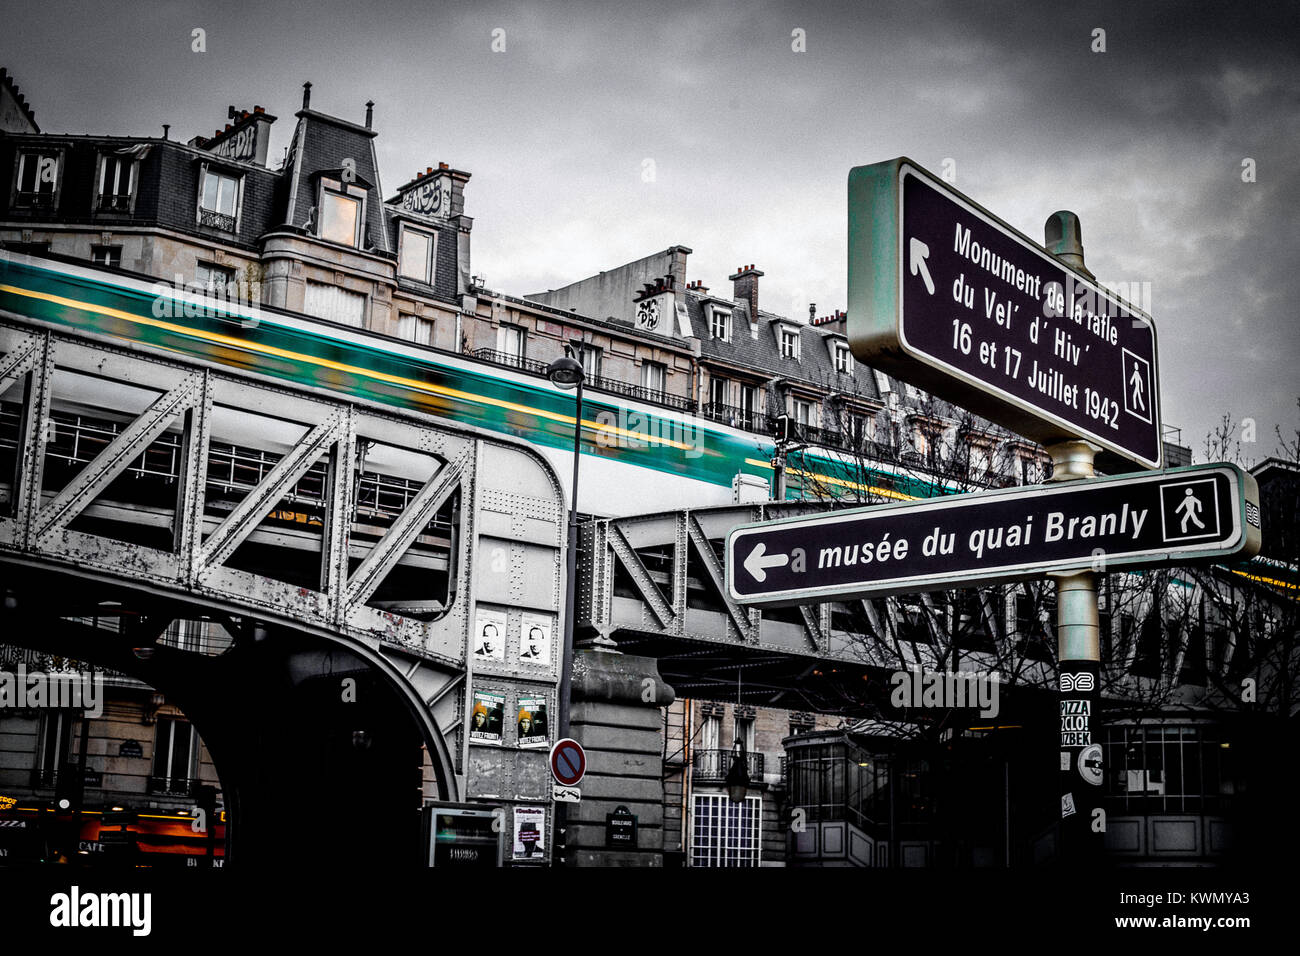 A basso angolo di visione del vecchio ponte della ferrovia nei confronti di vecchi edifici residenziali nel centro cittadino di Parigi in un giorno nuvoloso Foto Stock